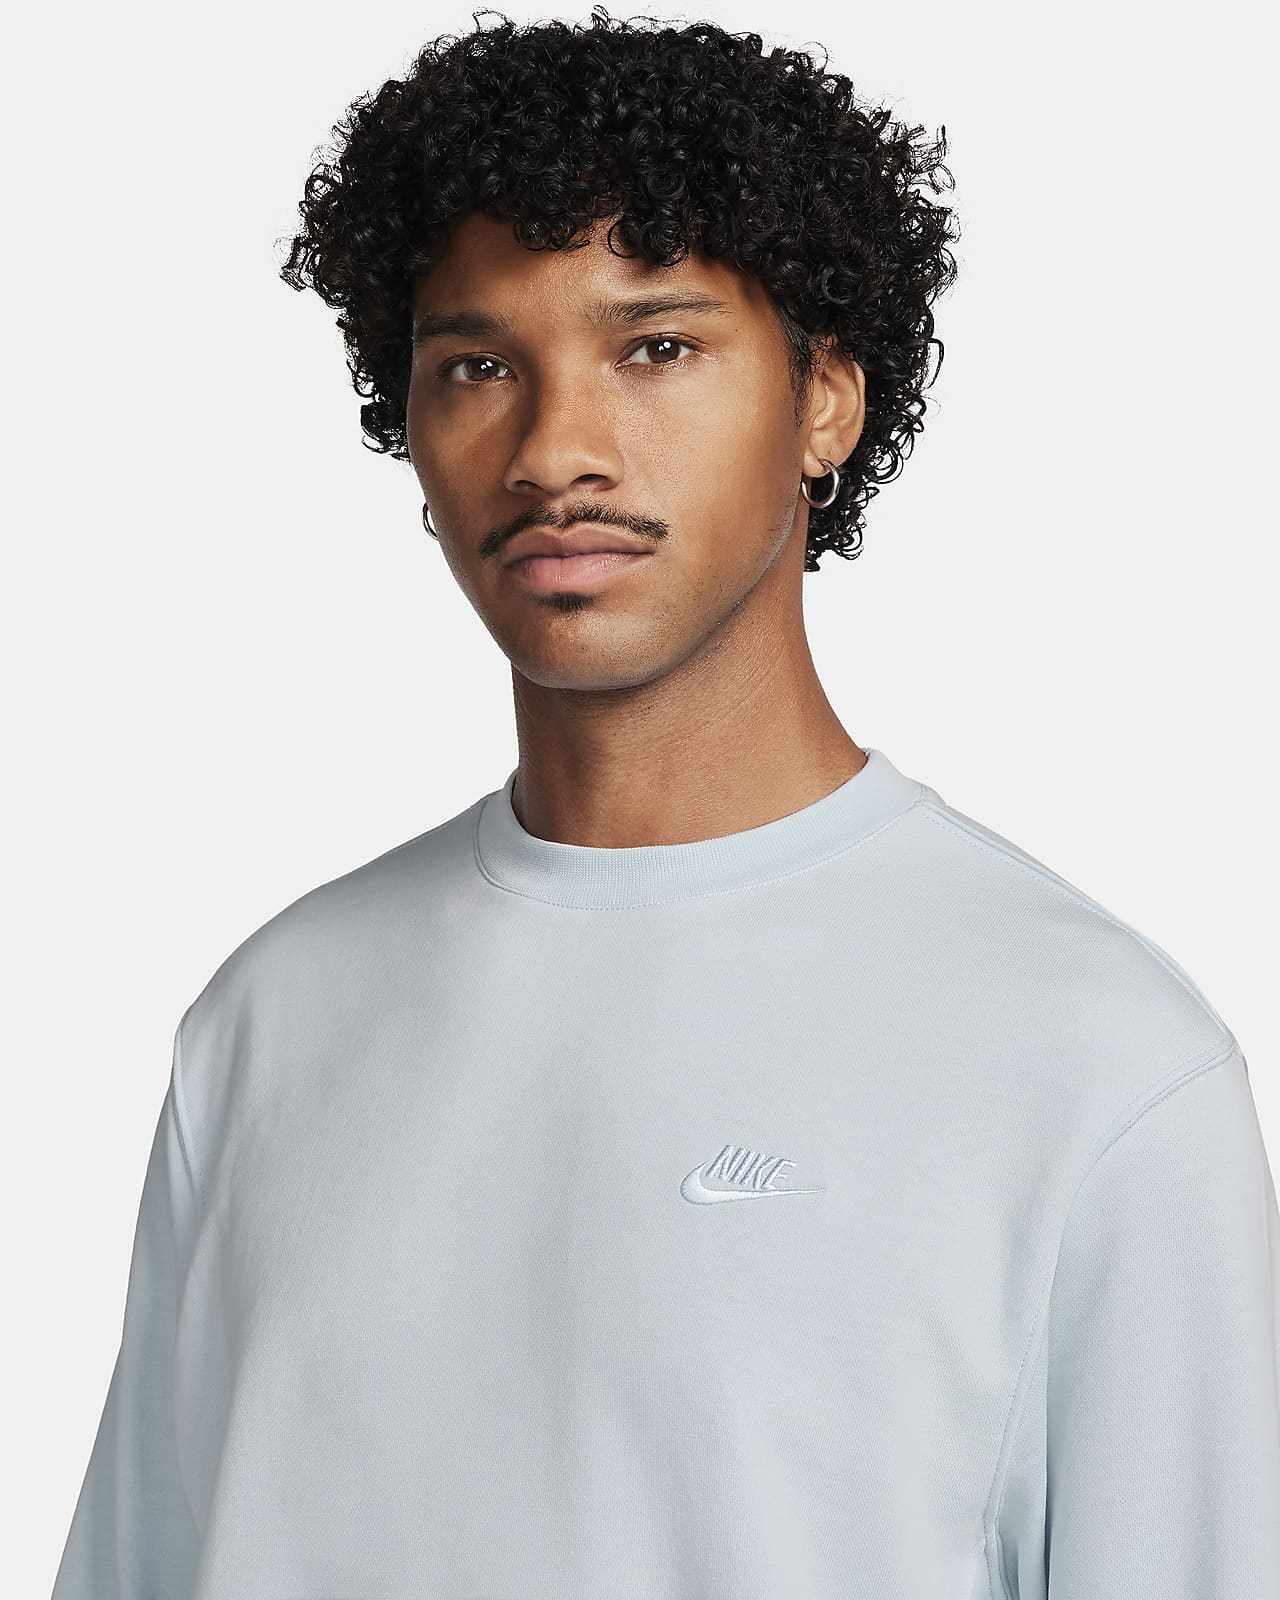 Nike Sportswear Club Fleece Men's Crew-neck Sweatshirt. Nike LU